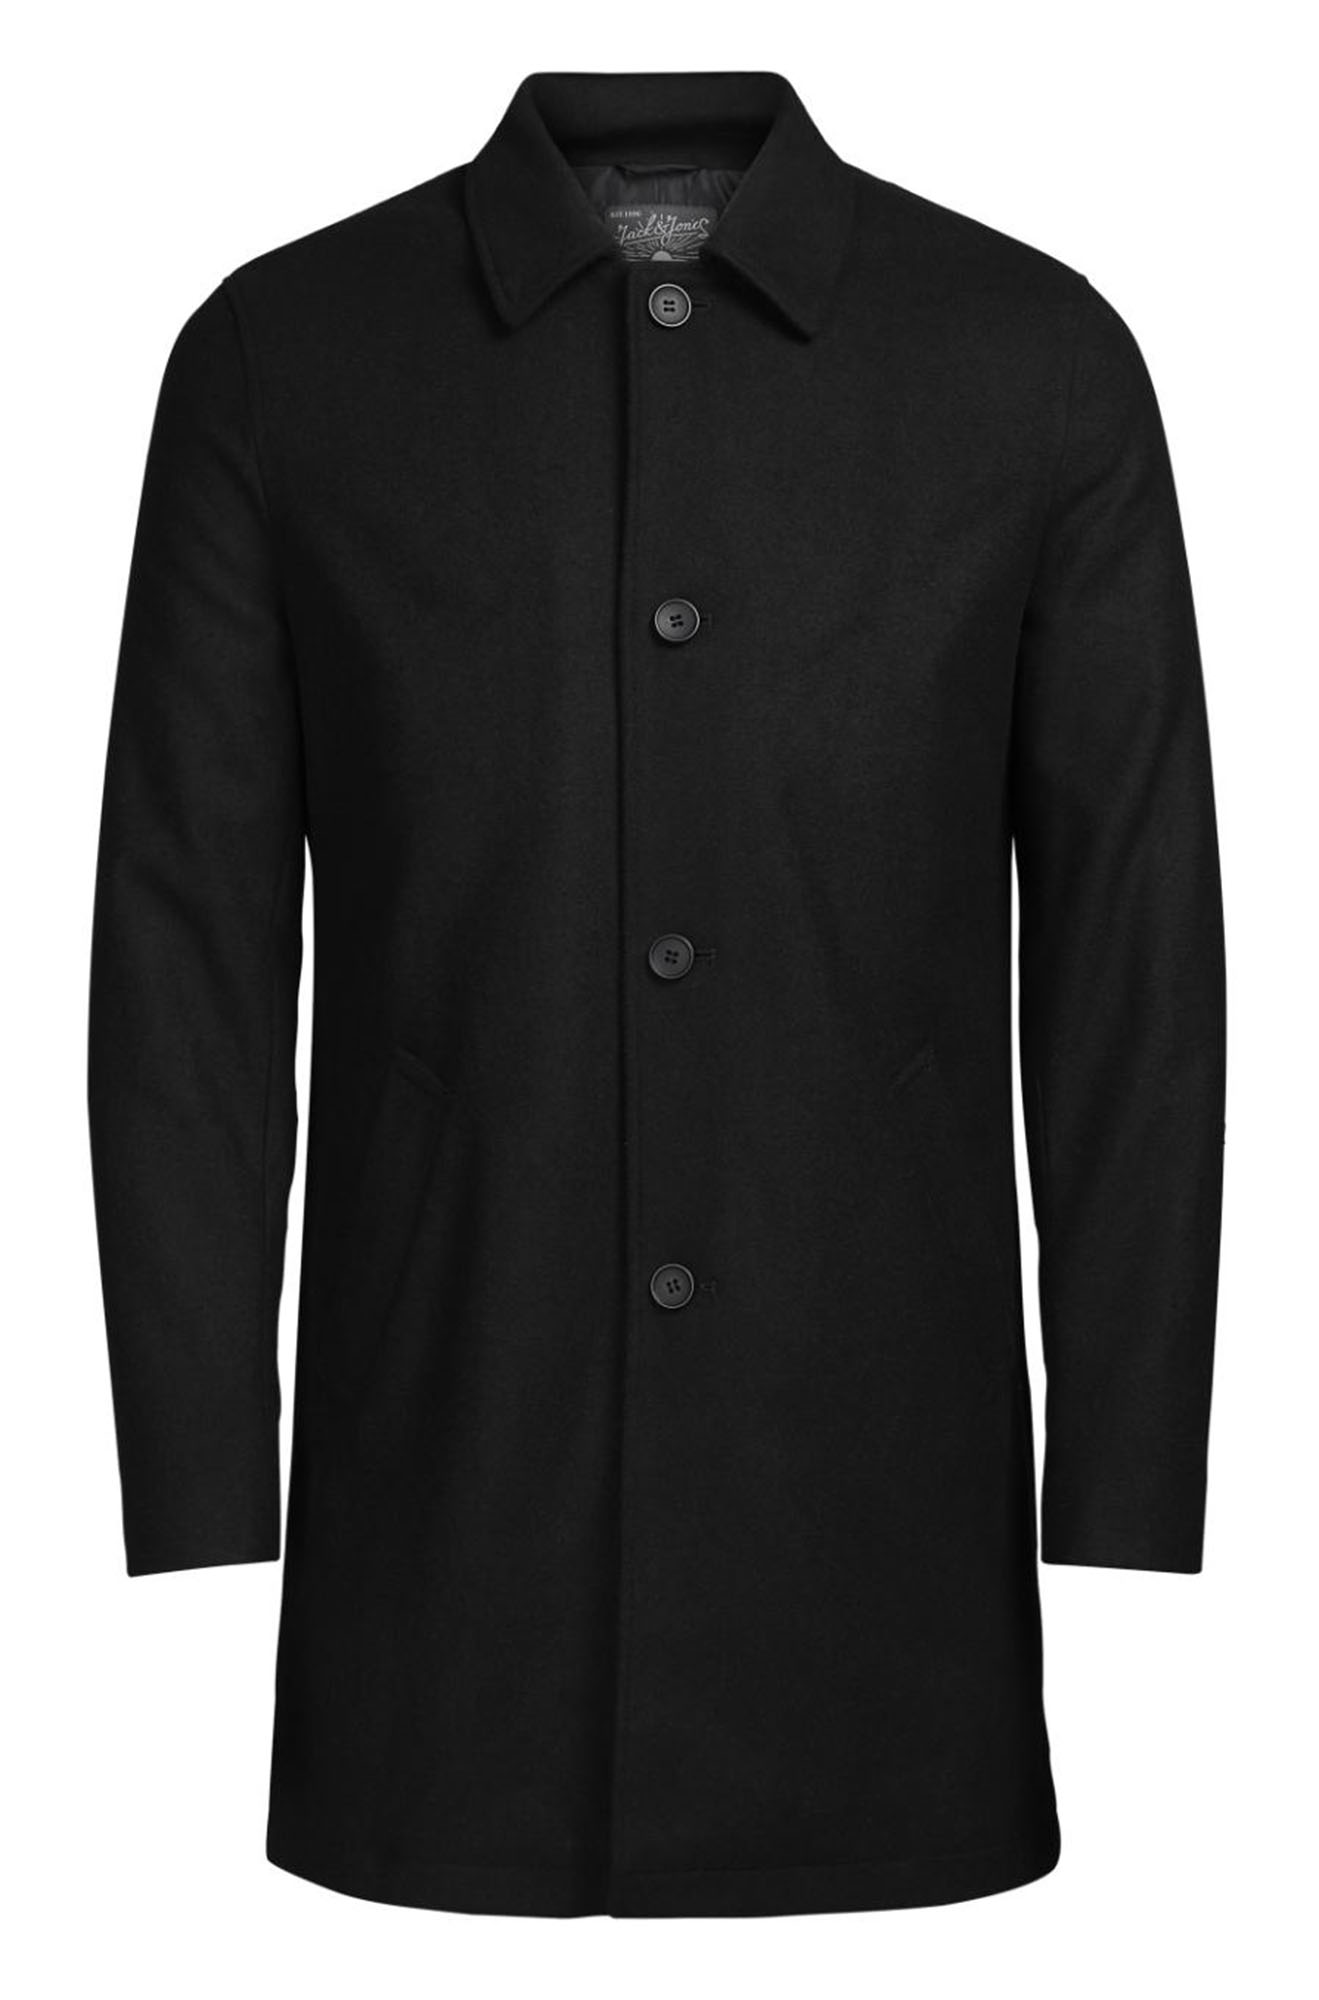 JACK & JONES Mens New Wool Blend Smart Over Coat Style Jacket Navy ...